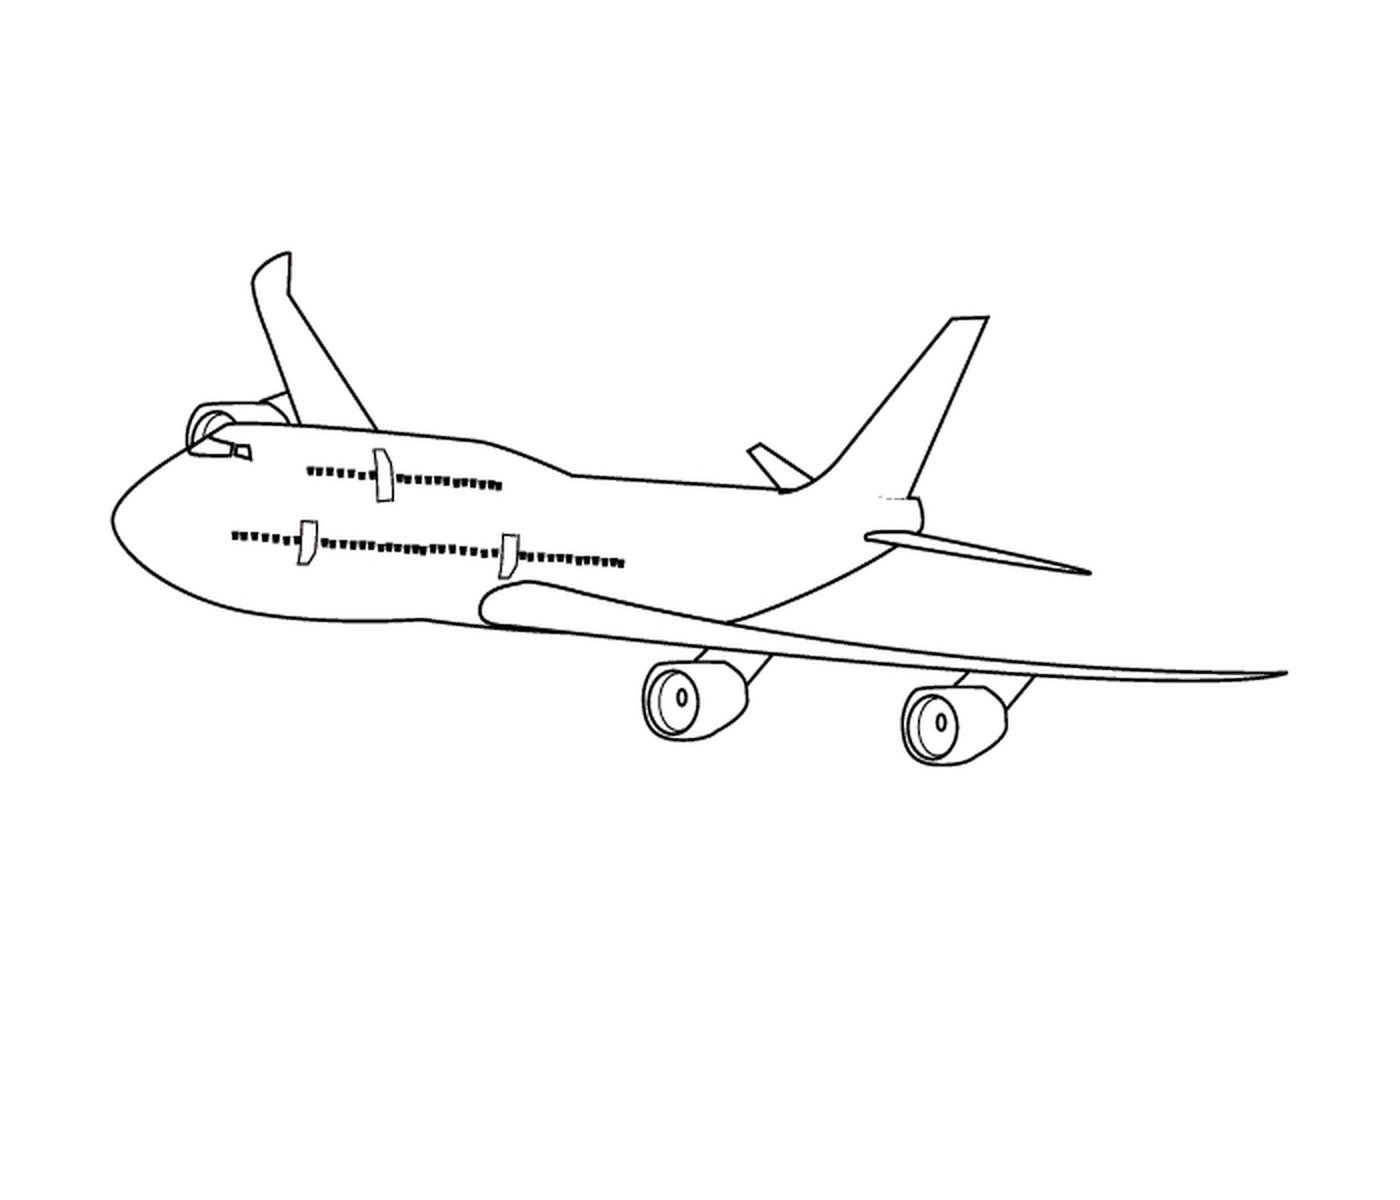  Un aereo disegnato 